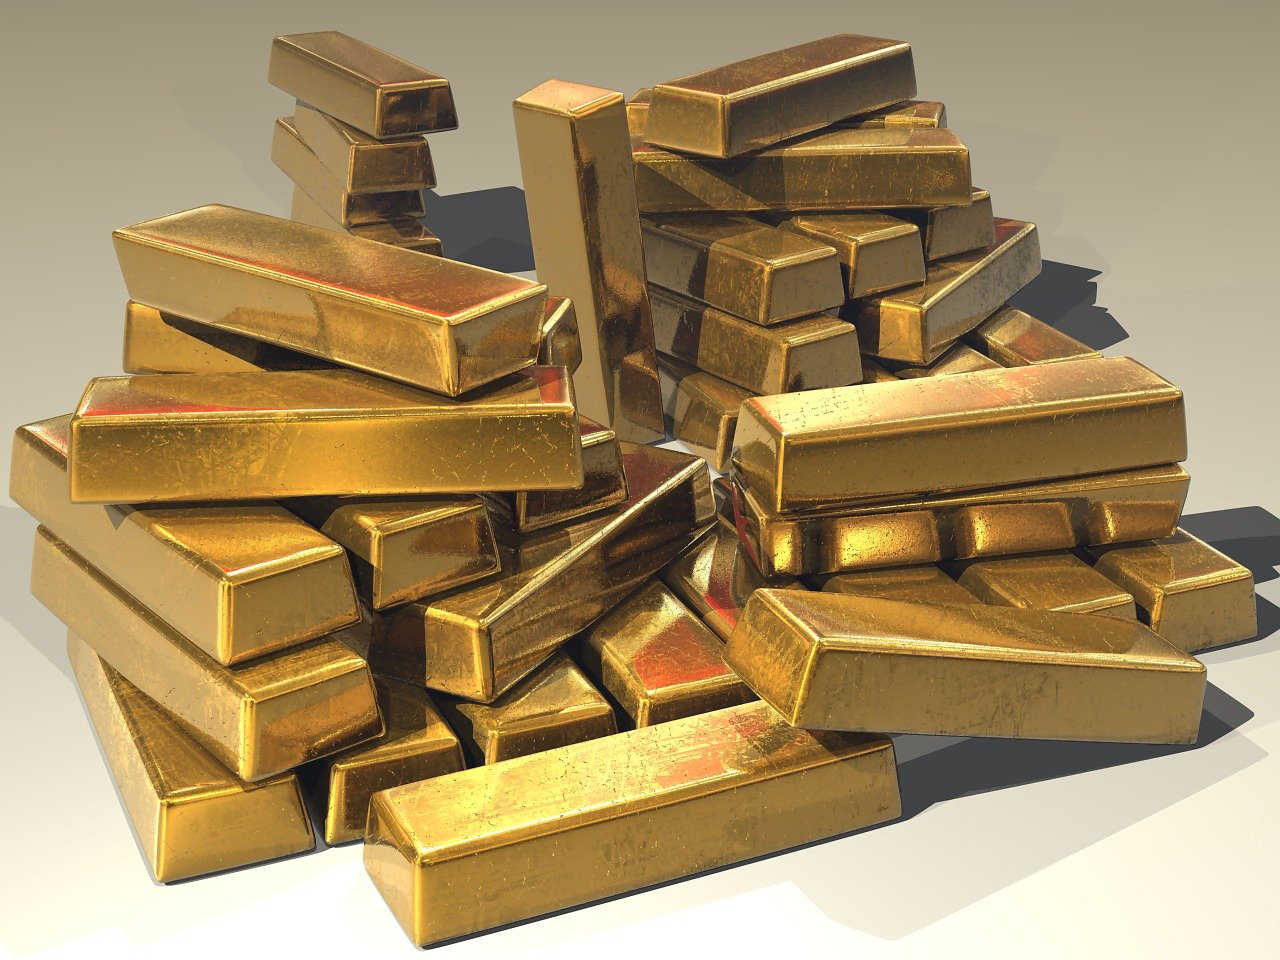 Acheter de l'Or en Suisse : est-ce rentable ?